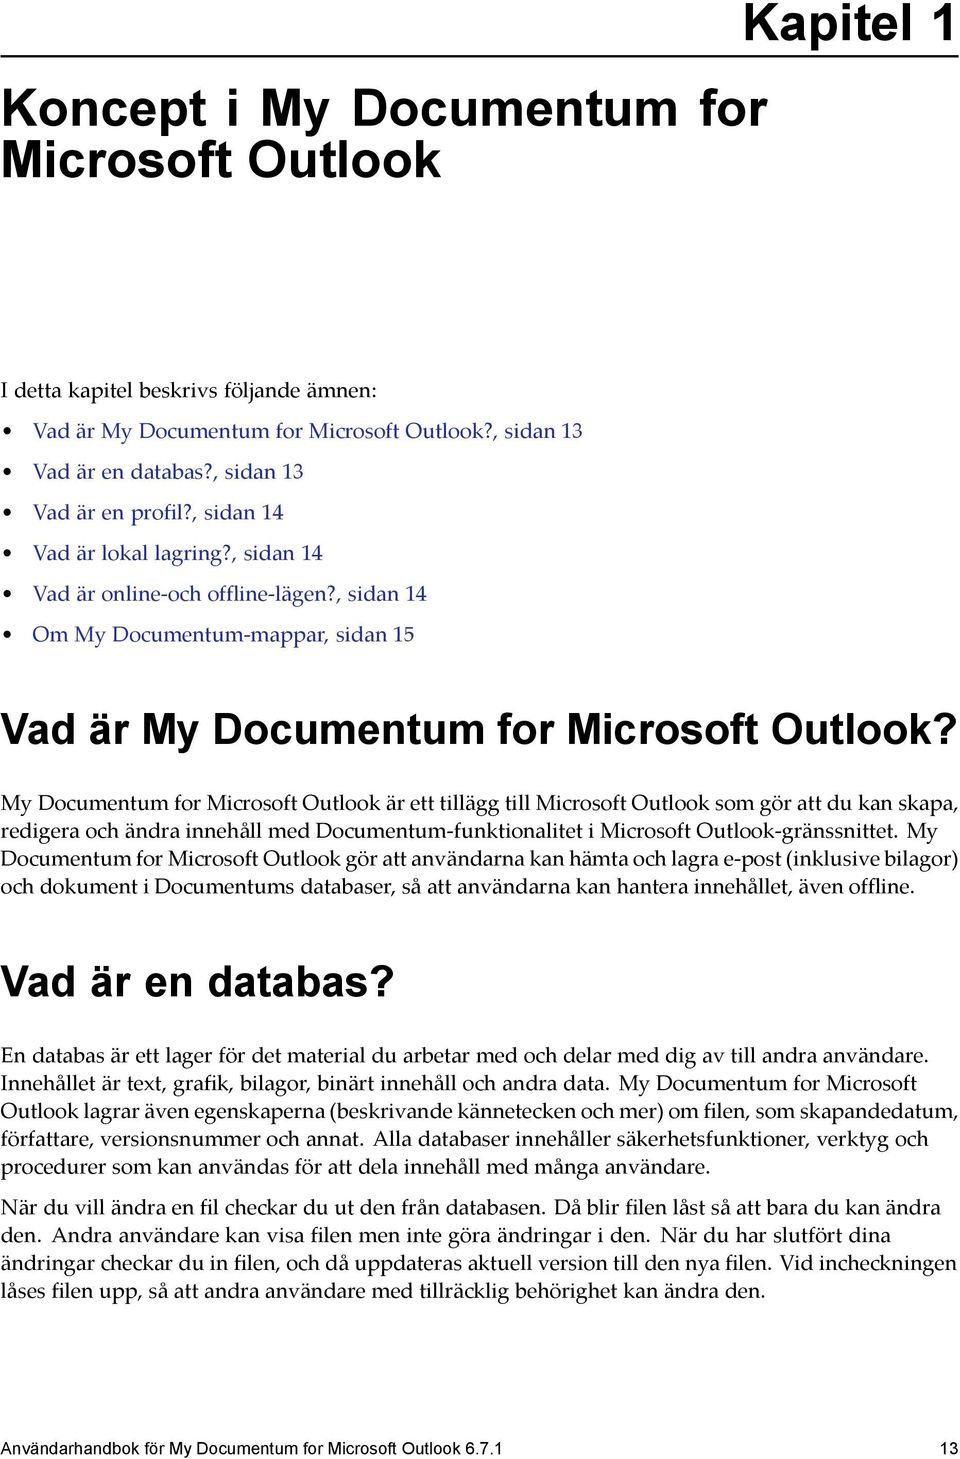 My Documentum for Microsoft Outlook är ett tillägg till Microsoft Outlook som gör att du kan skapa, redigera och ändra innehåll med Documentum-funktionalitet i Microsoft Outlook-gränssnittet.